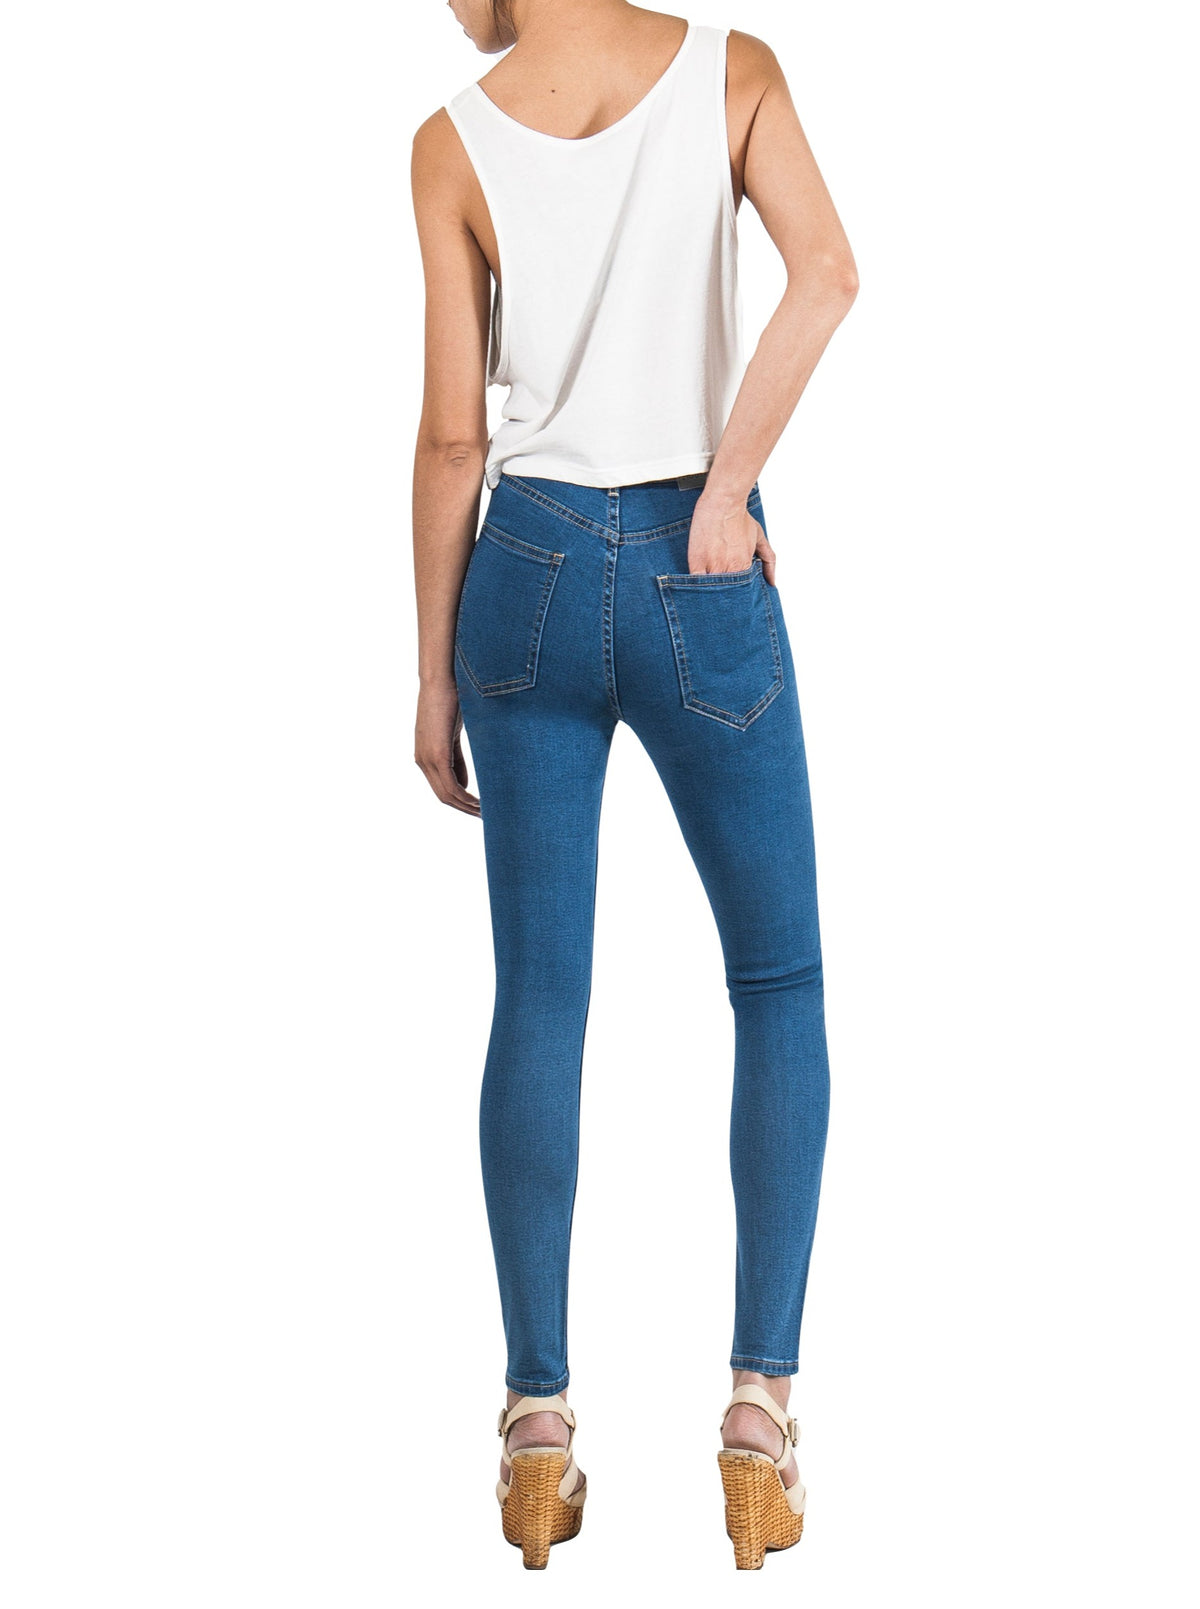 Women's Jeans – 88 Jeans